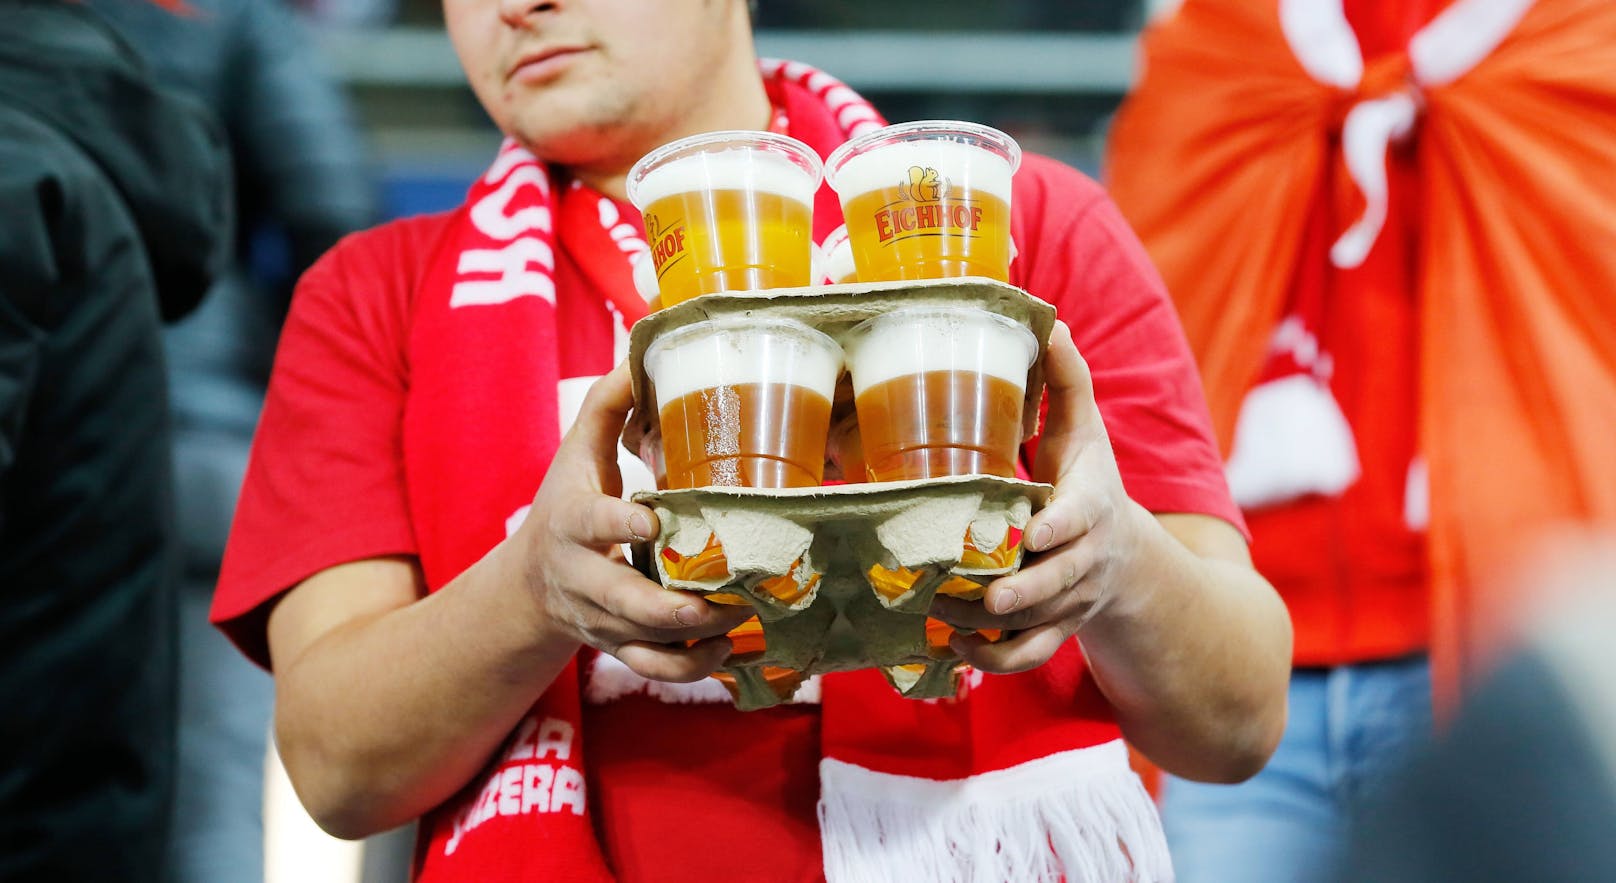 Fußball-Fans weltweit wüten über das Alkoholverbot: "Kein Bier, keine Chance!"